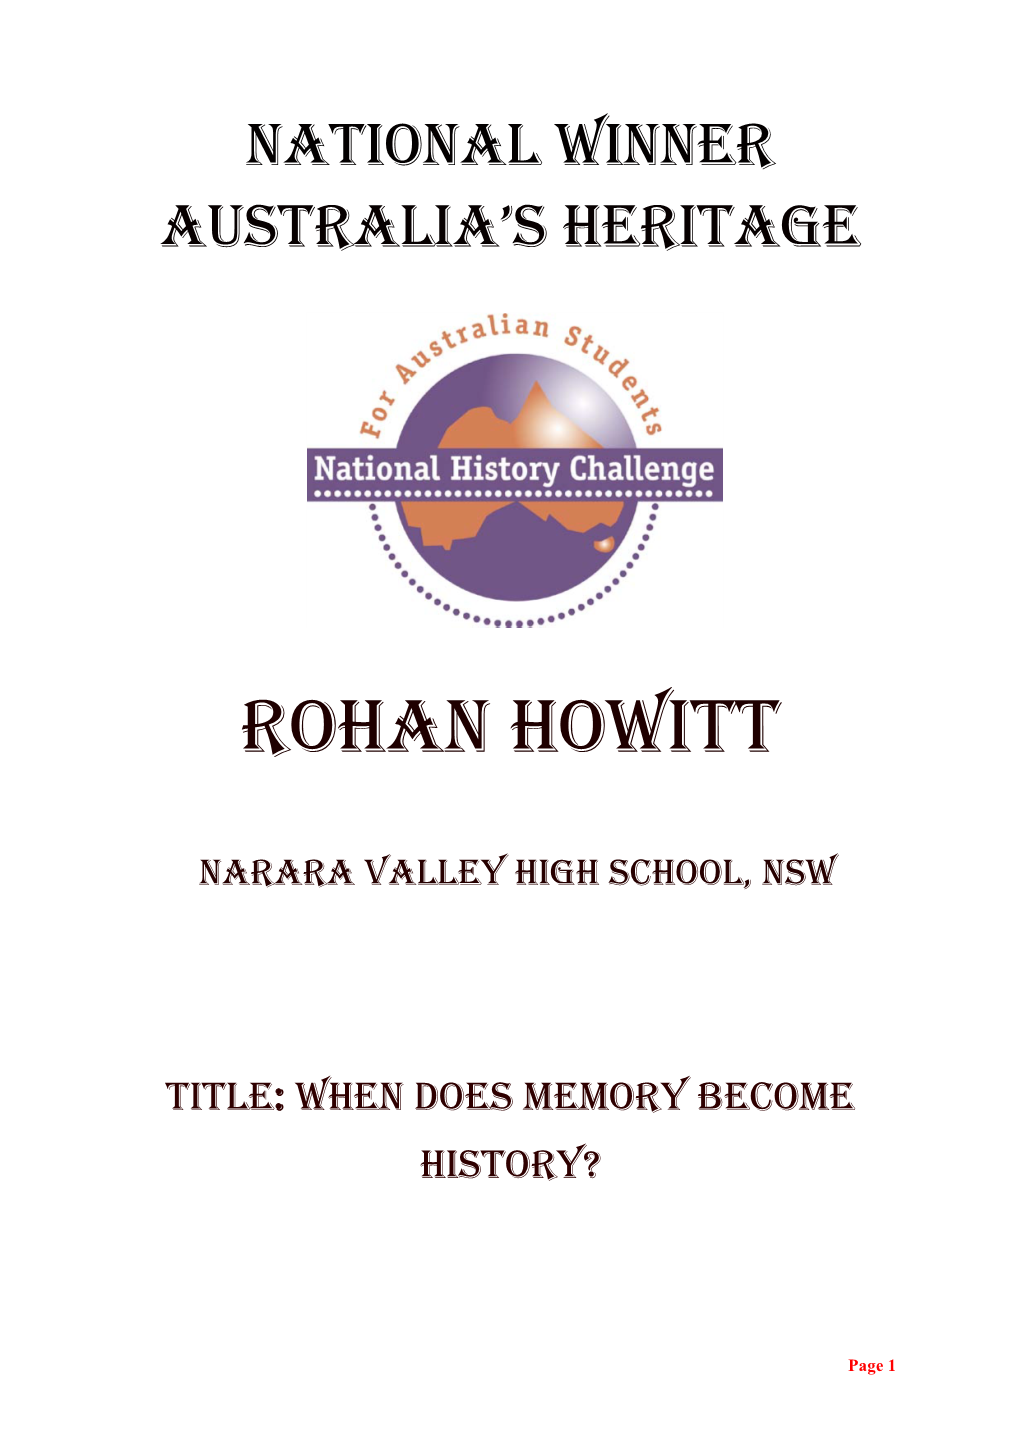 Rohan Howitt